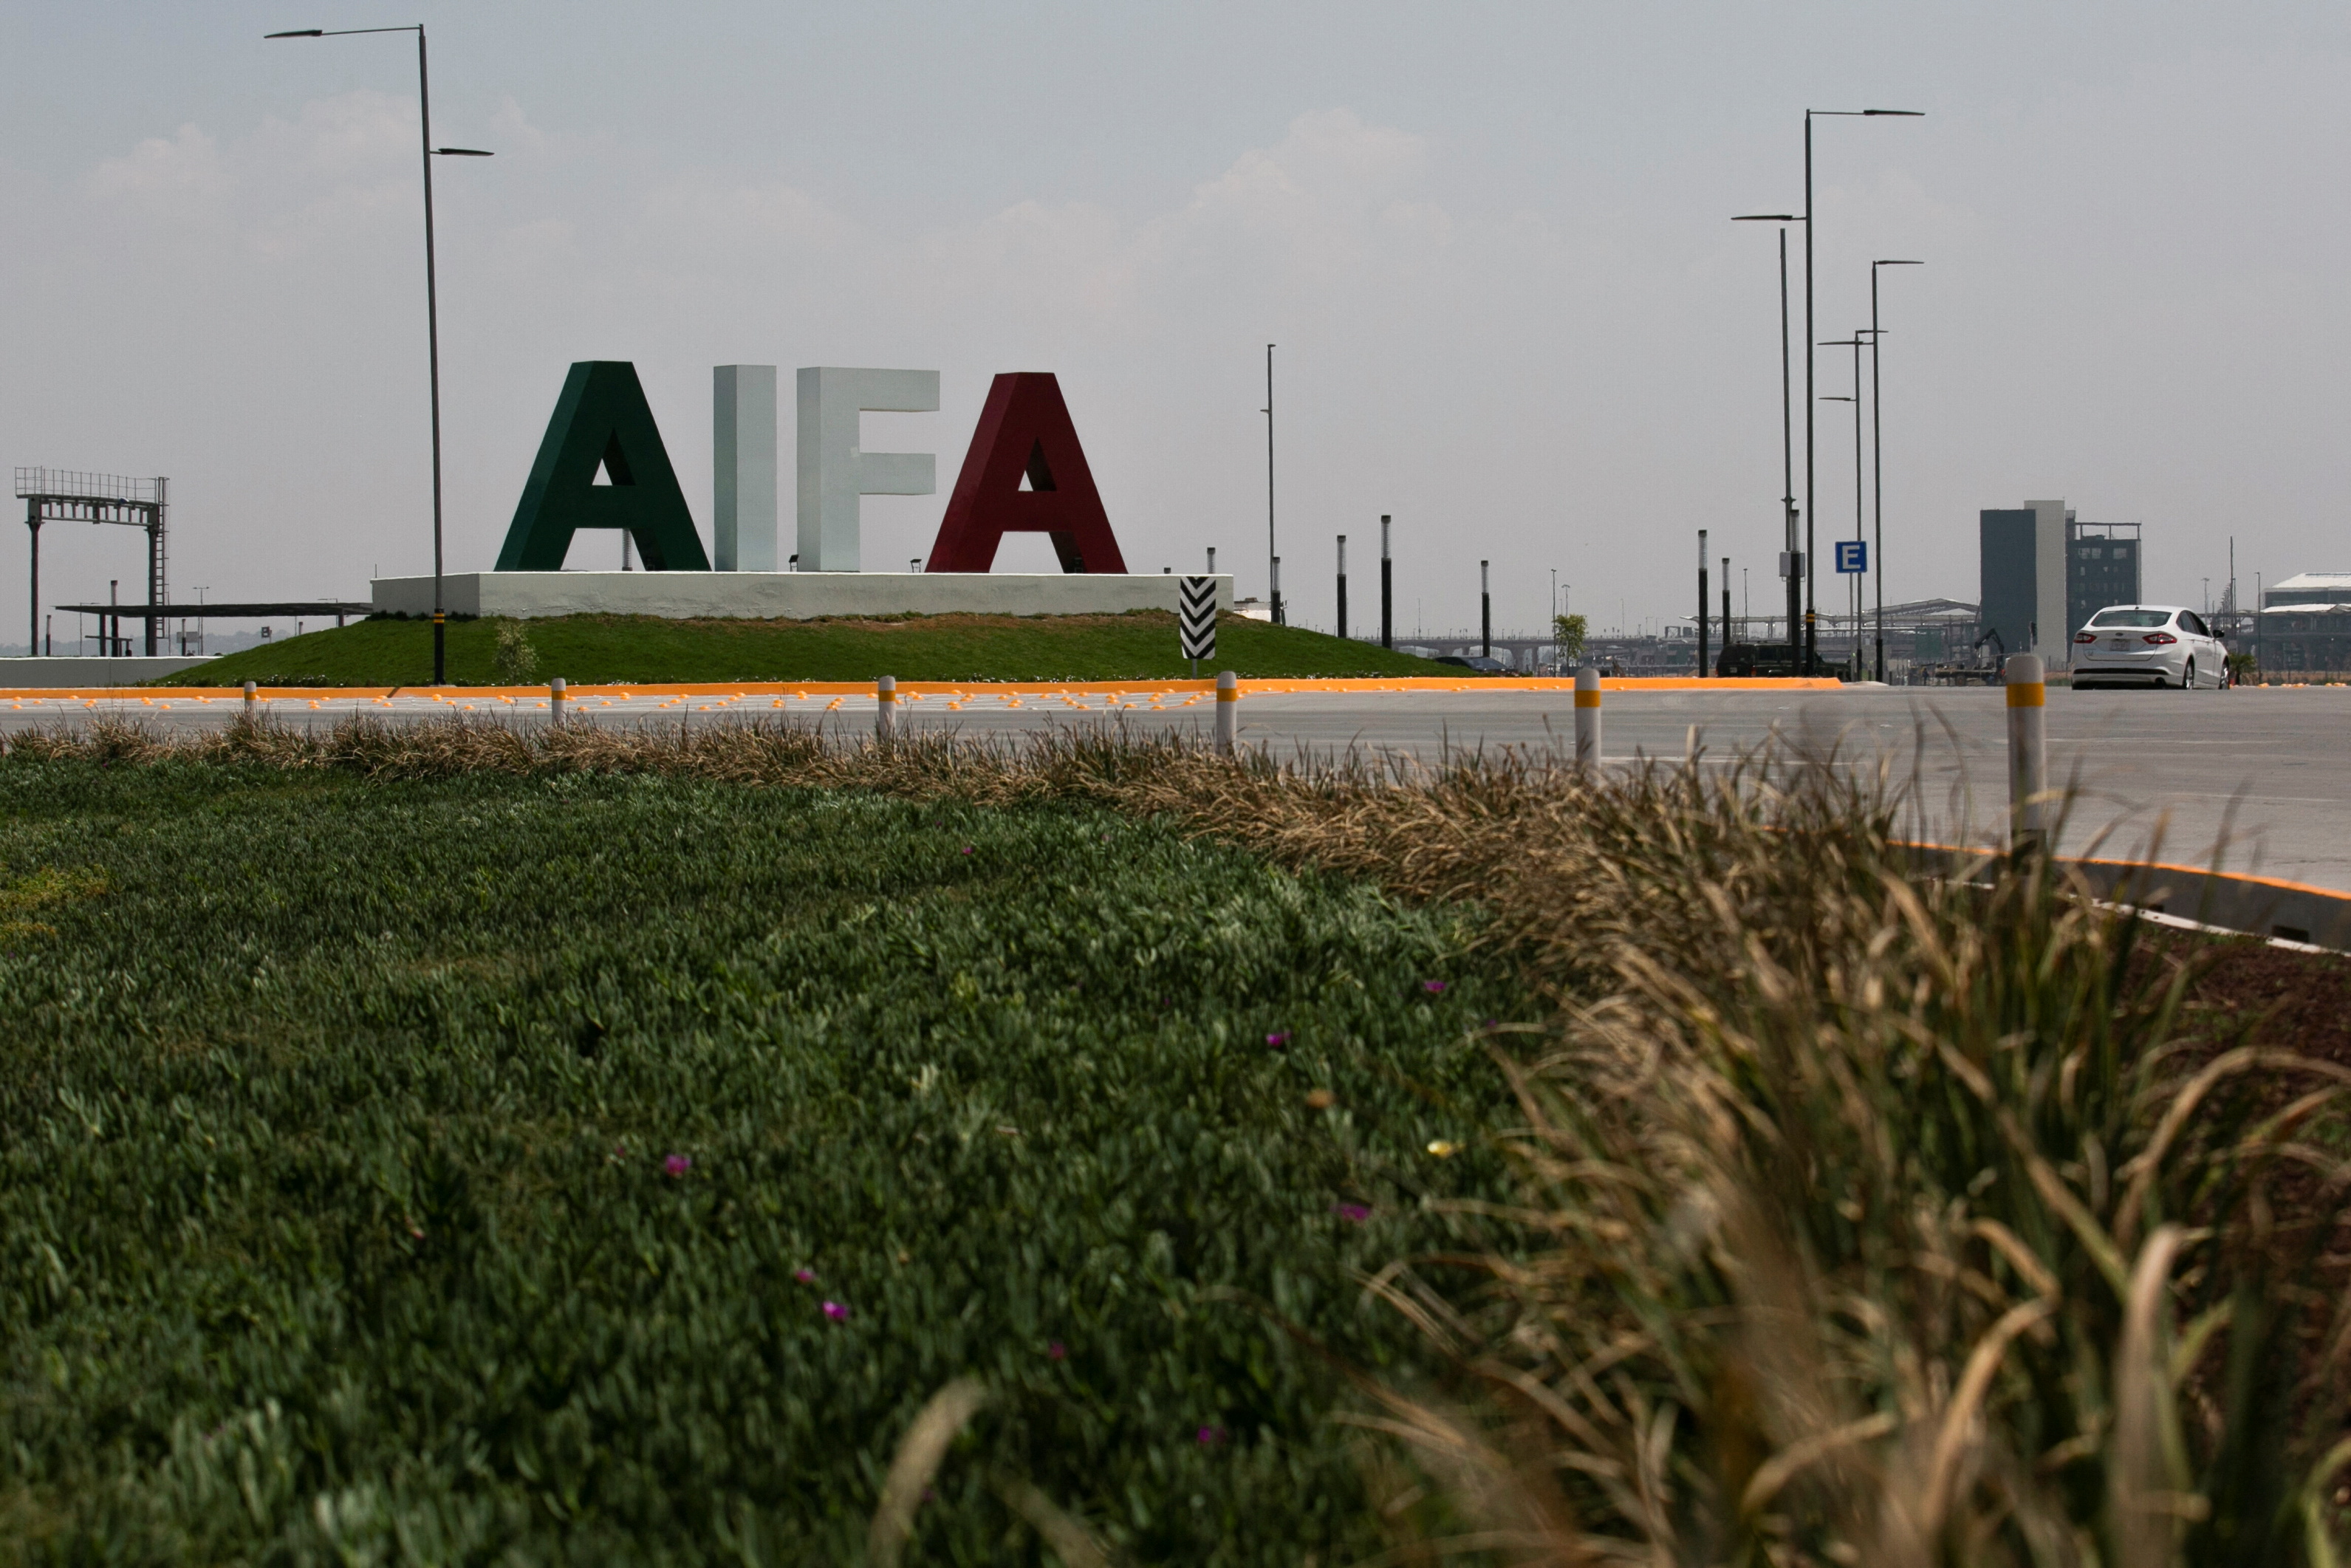 El AIFA ha registrado 21 vuelos internacionales desde su apertura. (Foto: REUTERS/Quetzalli Nicte-Ha)